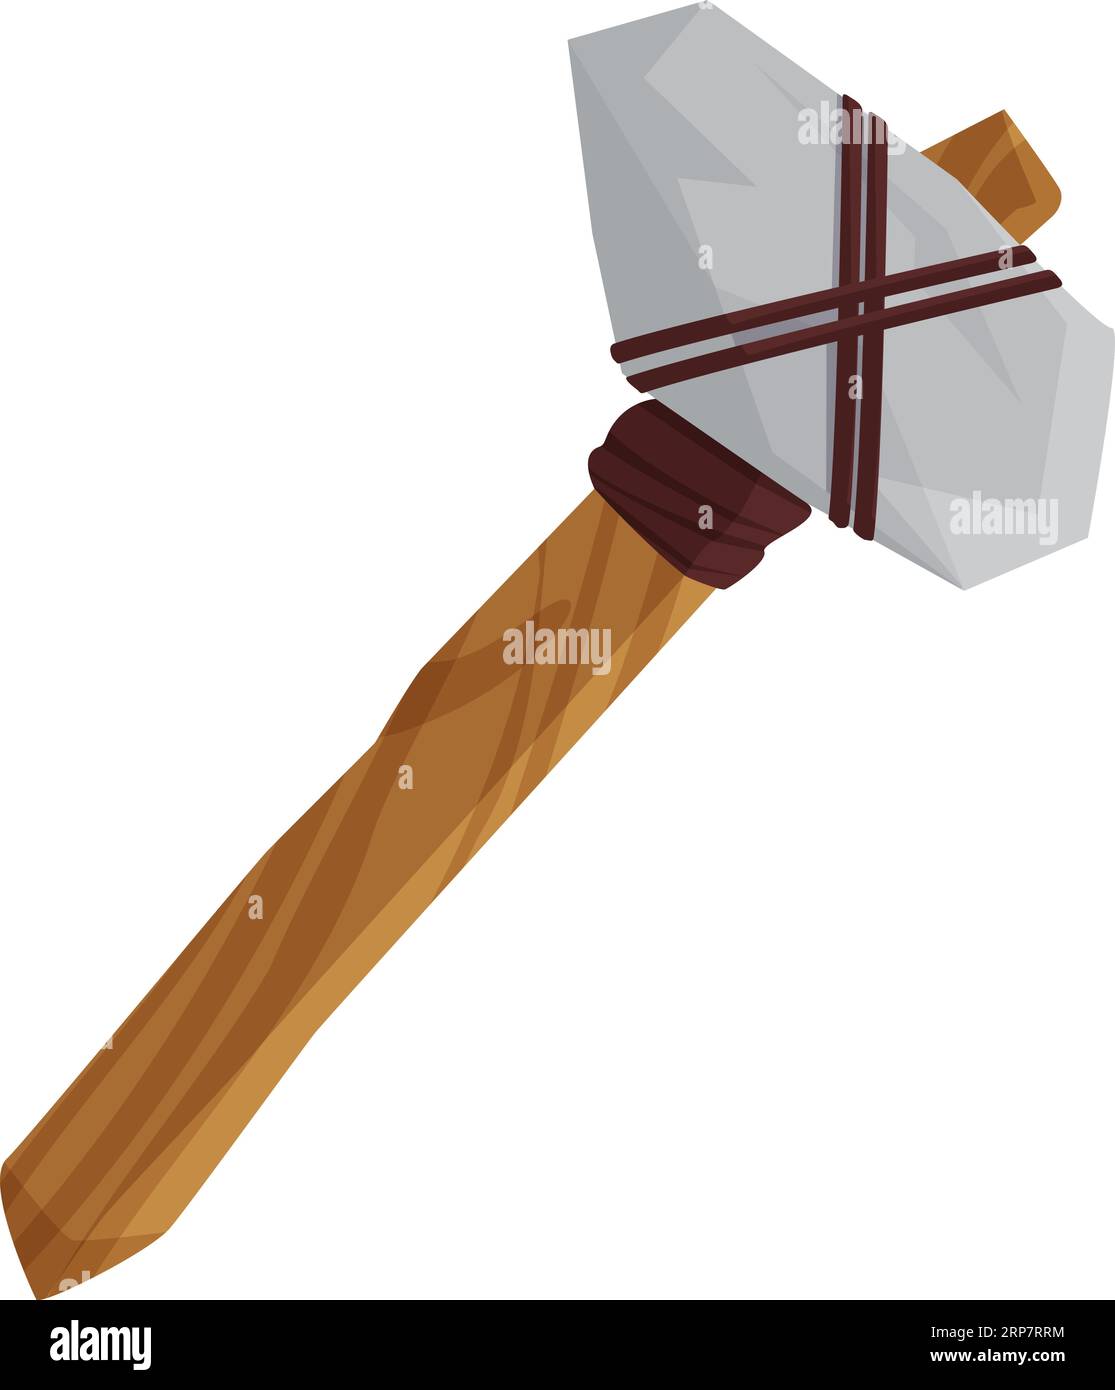 Steinzeitlicher Hammer. Höhlenjäger-Werkzeuge, antike Objekte Zeichentrickvektor-Illustration Stock Vektor